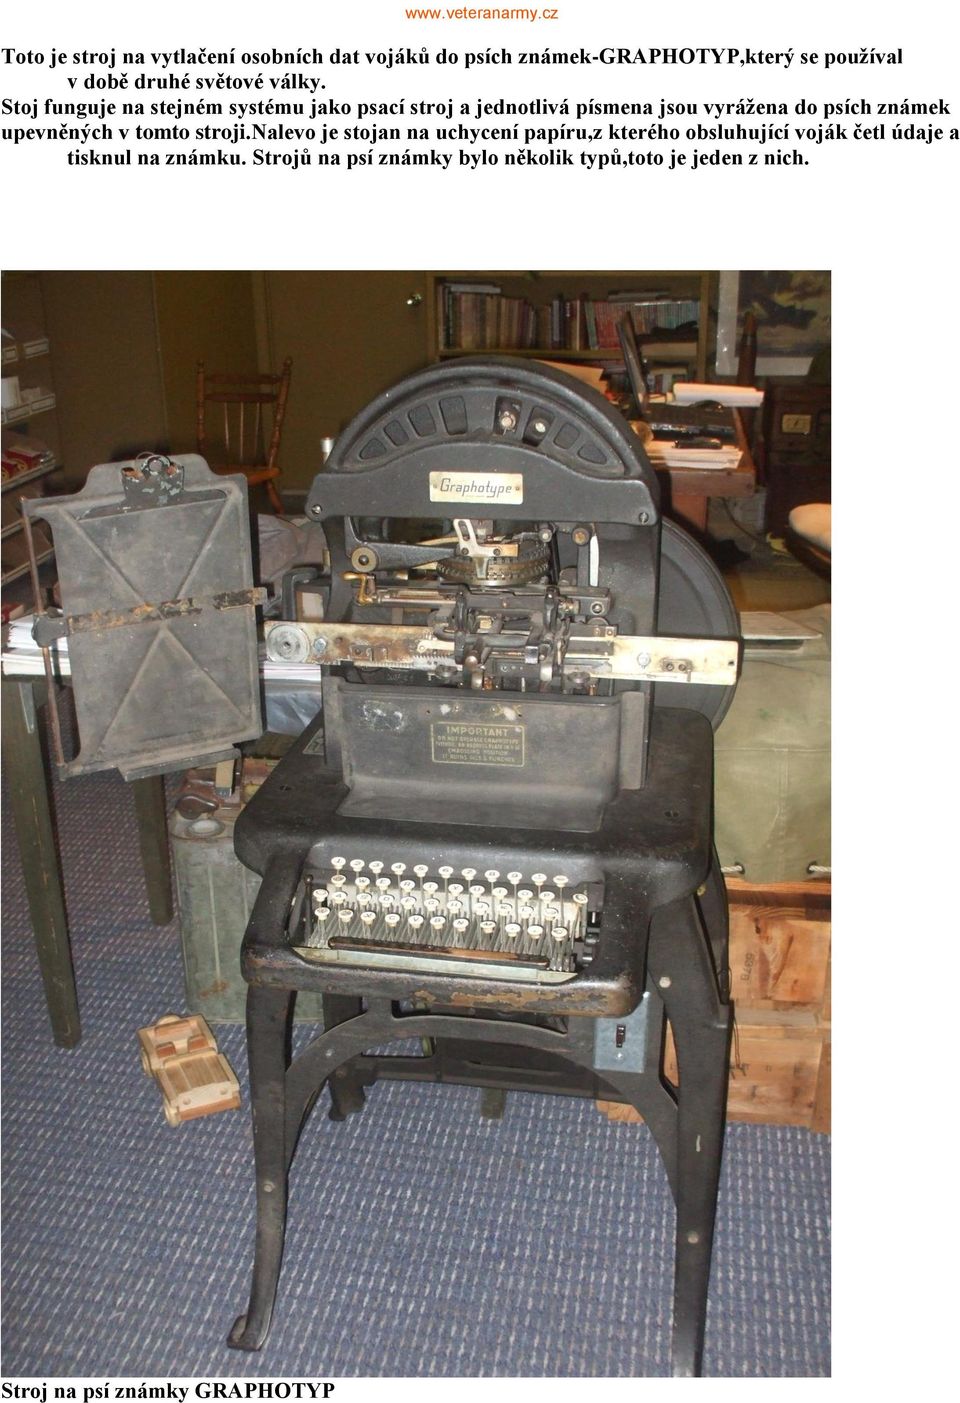 Stoj funguje na stejném systému jako psací stroj a jednotlivá písmena jsou vyrážena do psích známek